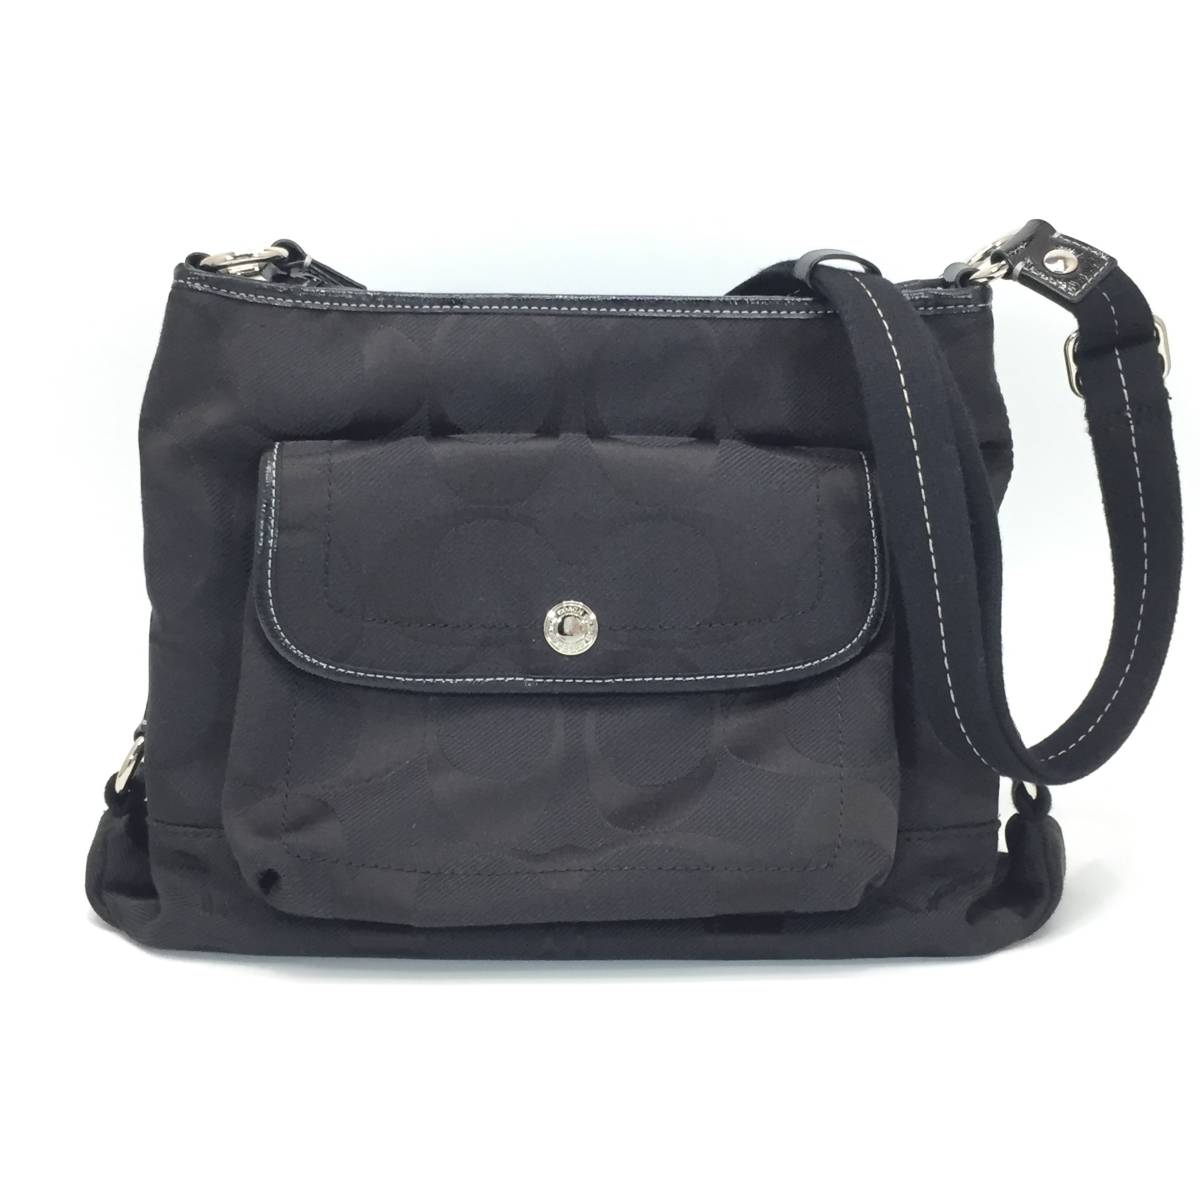 ER-80[ COACH ] Coach shoulder bag F16550 daisy nylon signature file bag Jaguar do× leather black lady's 